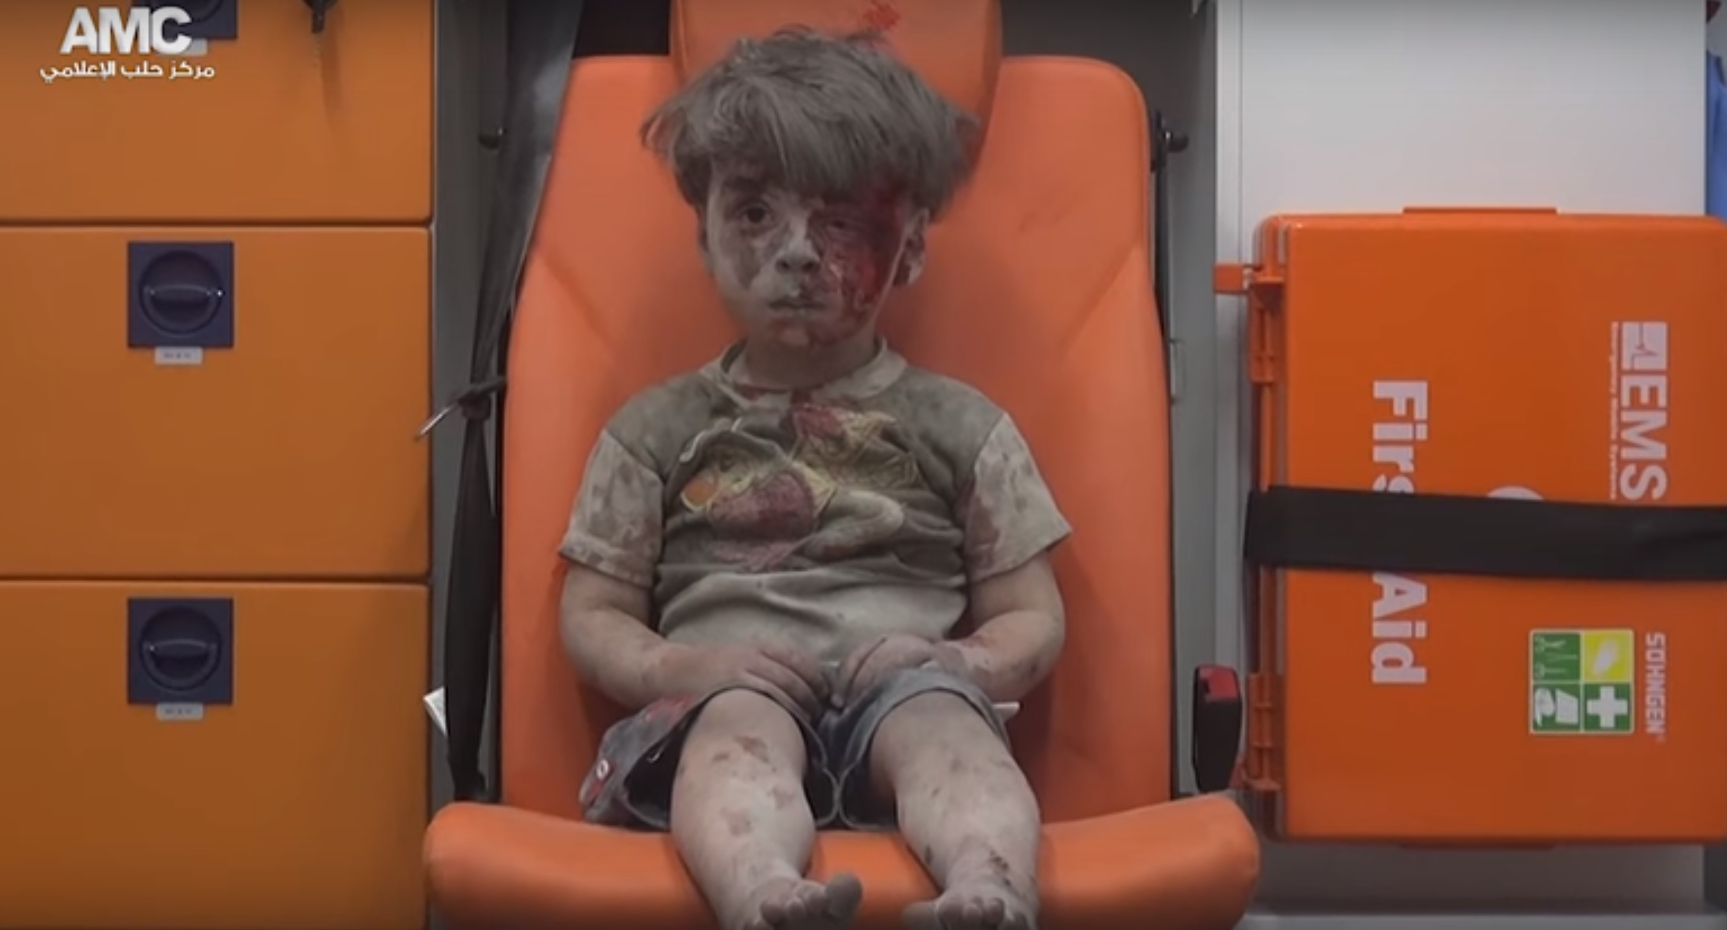 Un nen ferit de 5 anys, imatge de l'horror de la guerra siriana